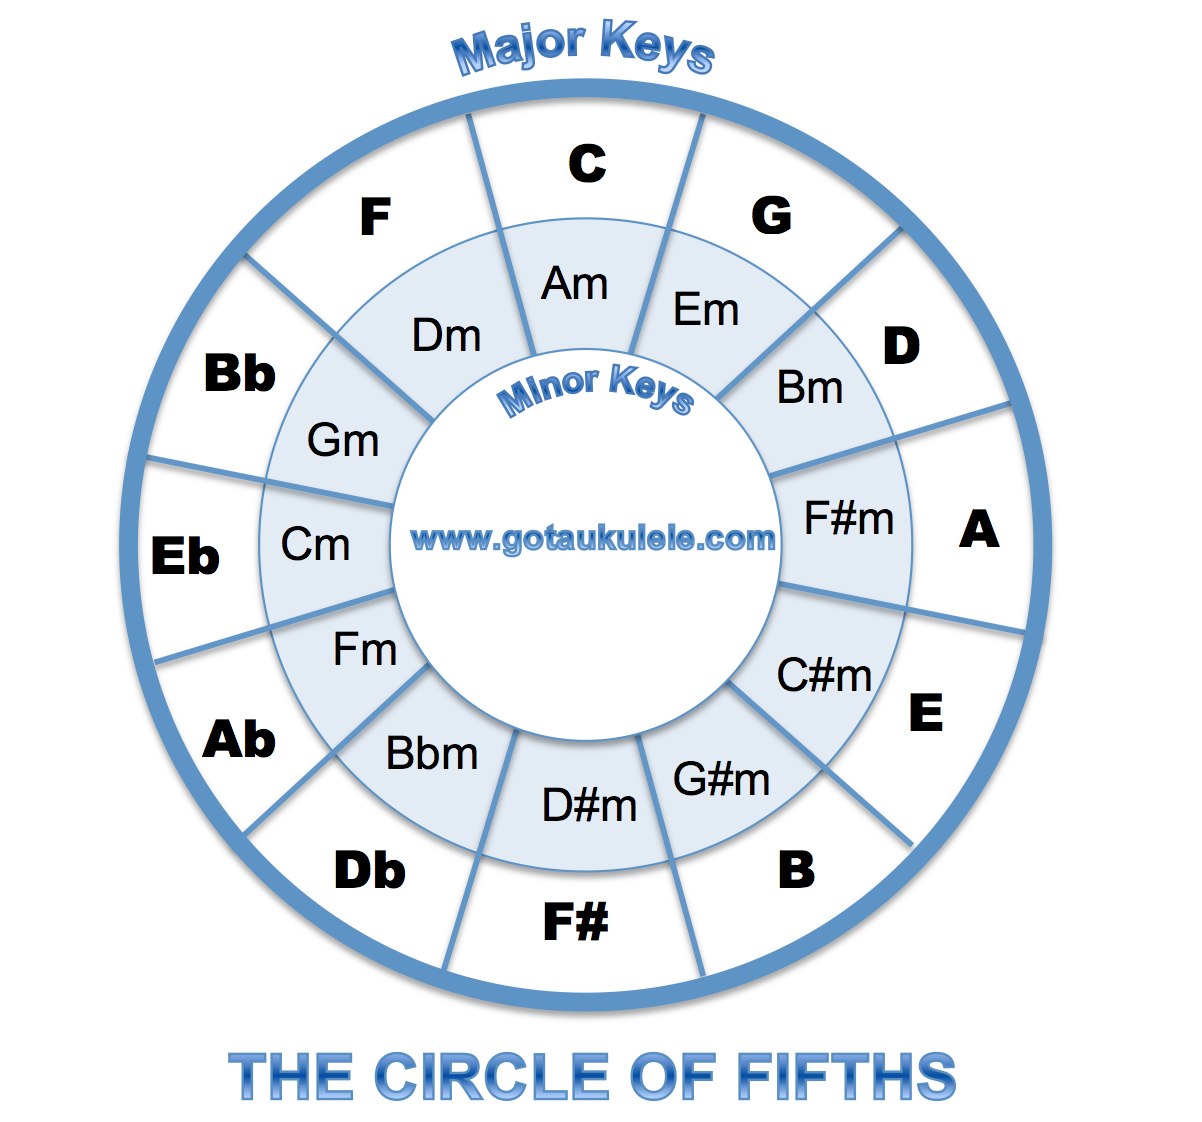 got-a-ukulele-leading-ukulele-blog-for-the-beginner-ukulele-chord-chart-and-fretboard-page